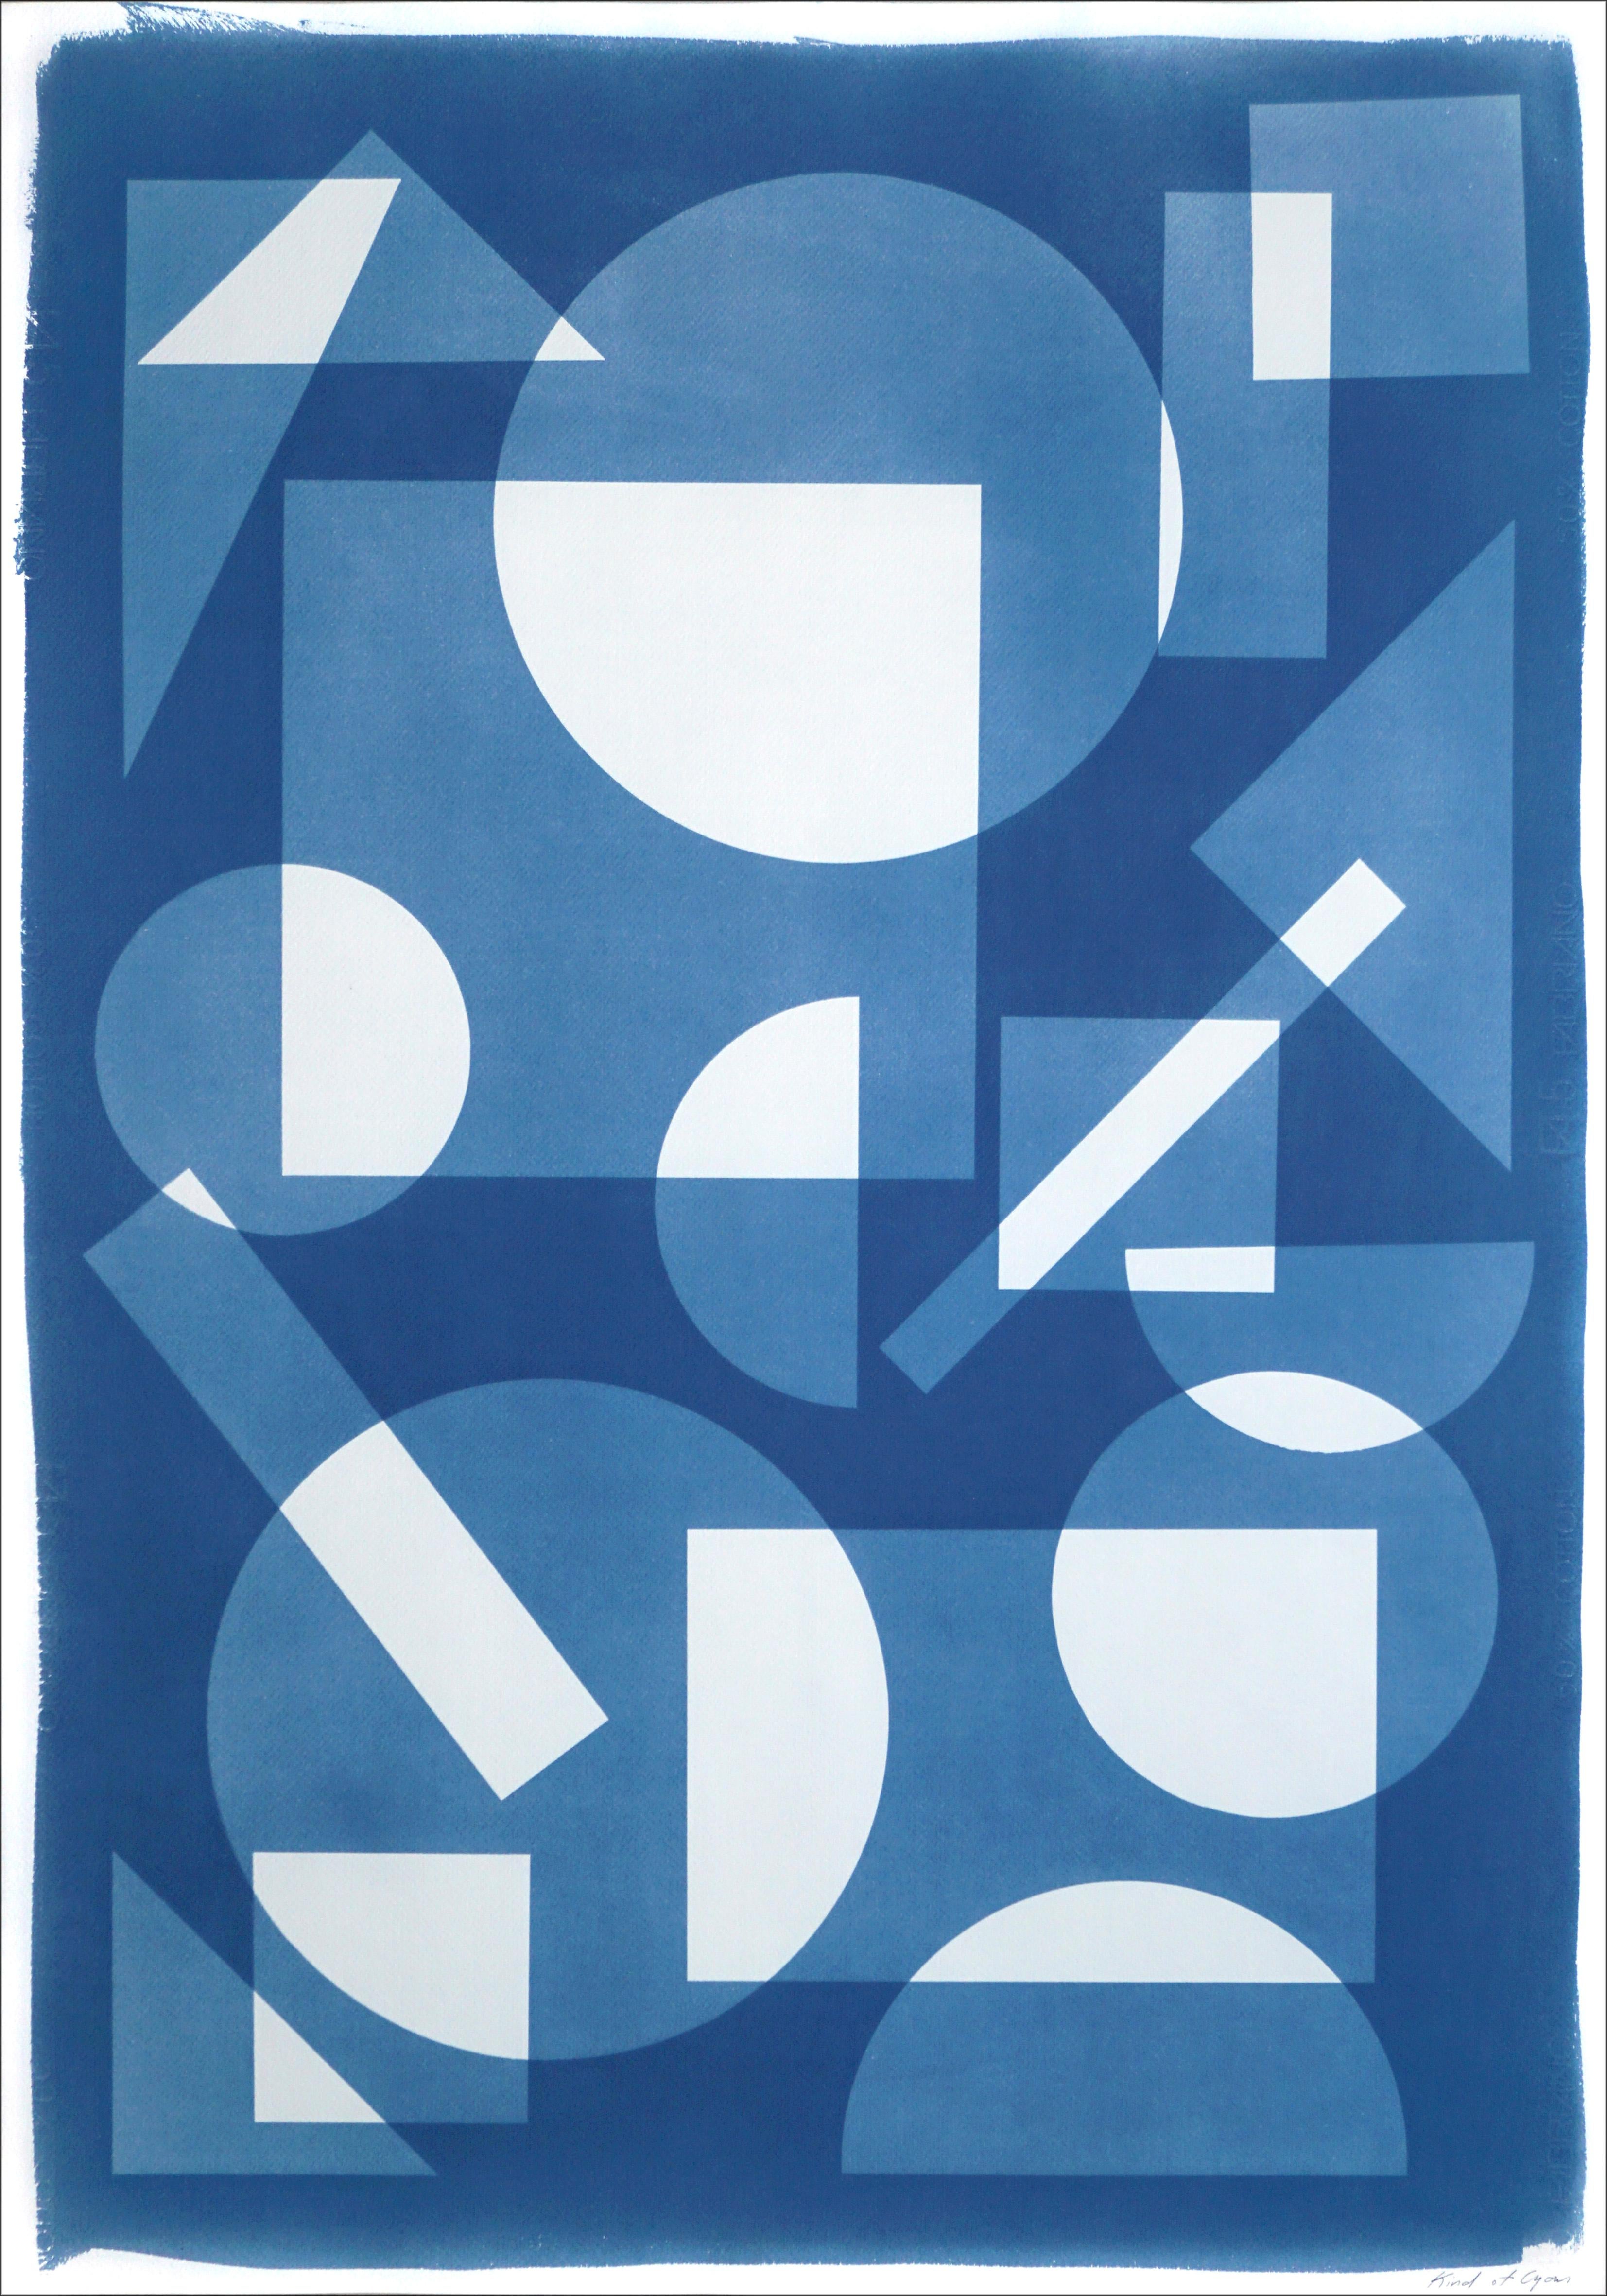 Abstract Print Kind of Cyan - Monotype constructiviste de formes simples flottant dans l'espace, géométrie blanche et bleue